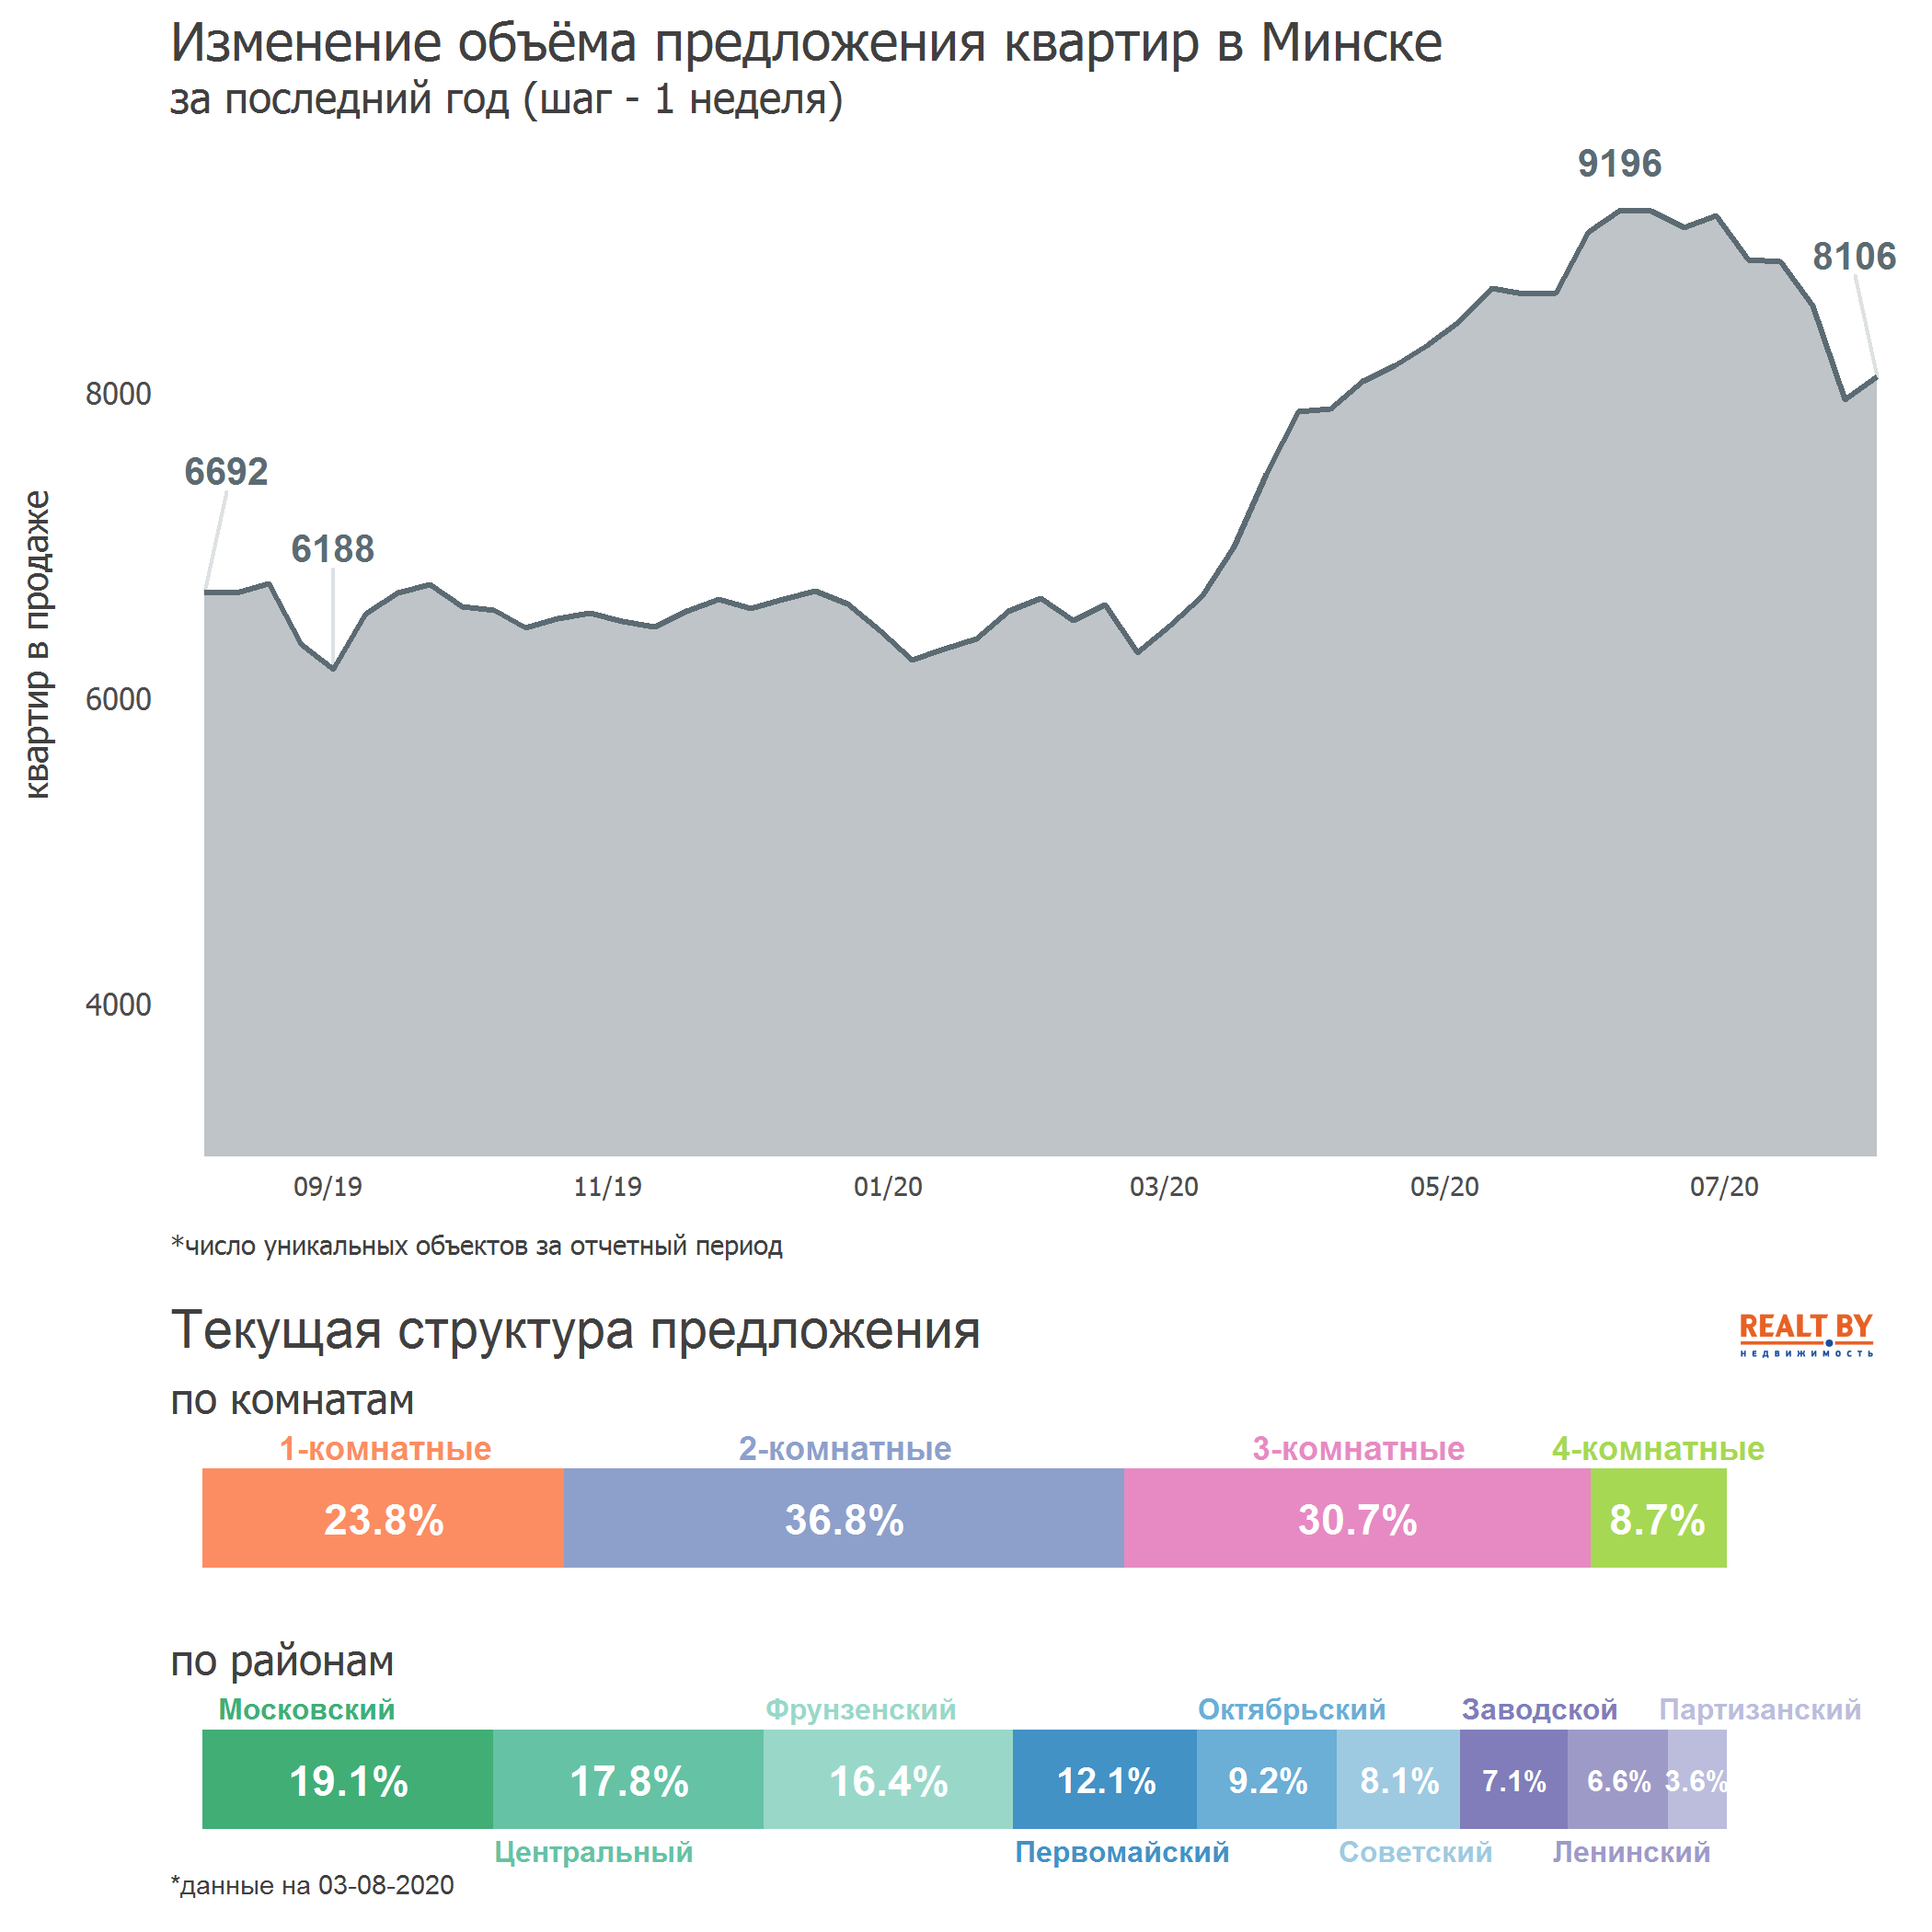 Мониторинг цен предложения квартир в Минске за 27 июля — 3 августа 2020 года